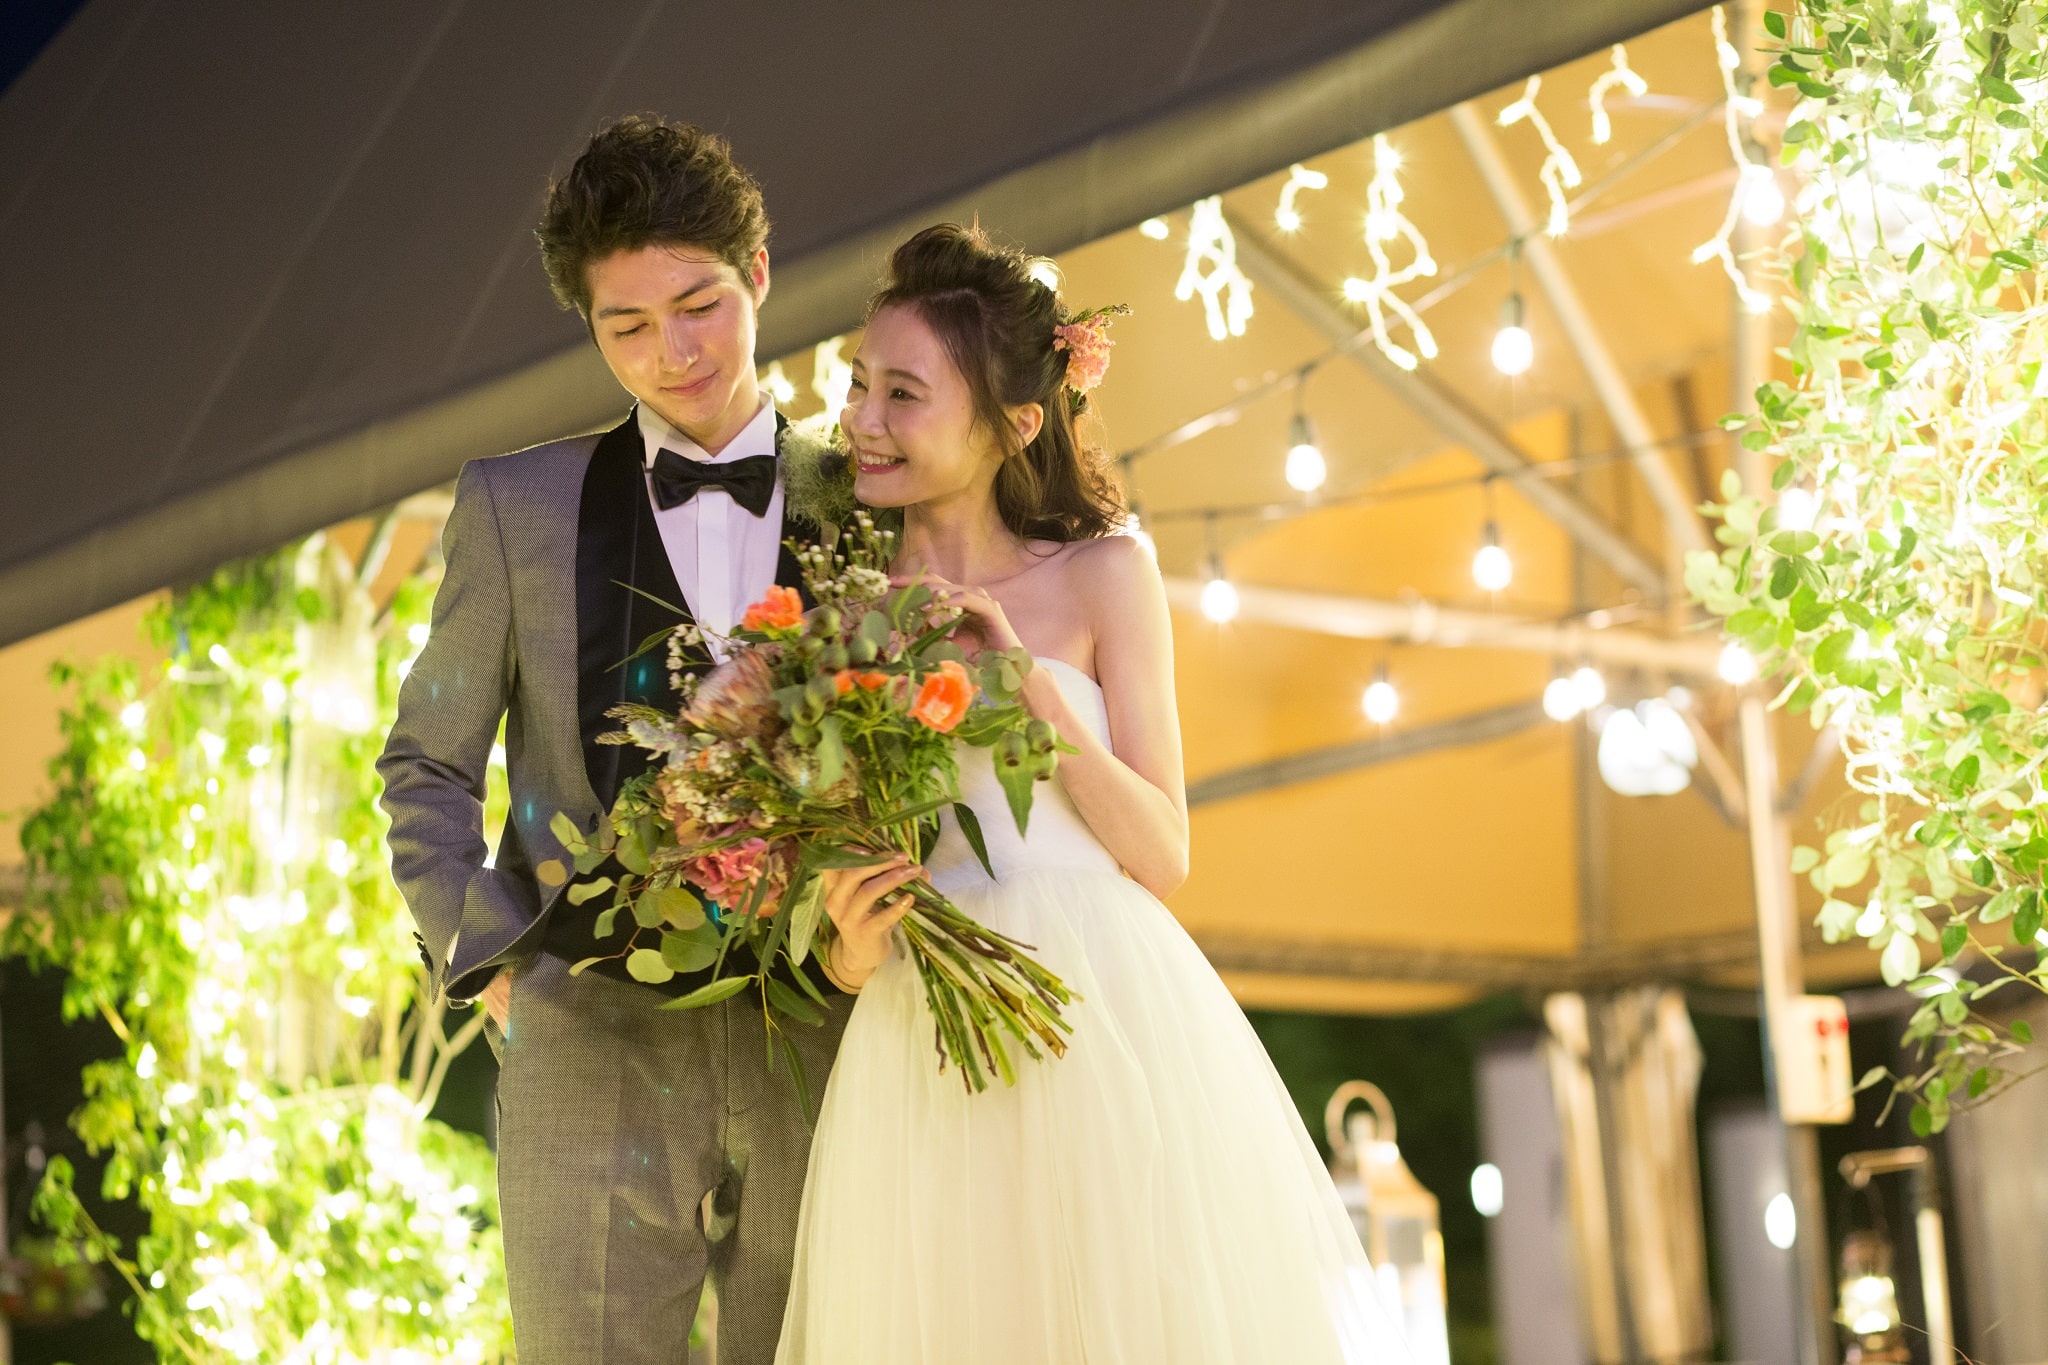 21年 名古屋で結婚式の1 5次会を挙げるならおすすめの式場とは 費用相場や当日の流れもご紹介 でら婚